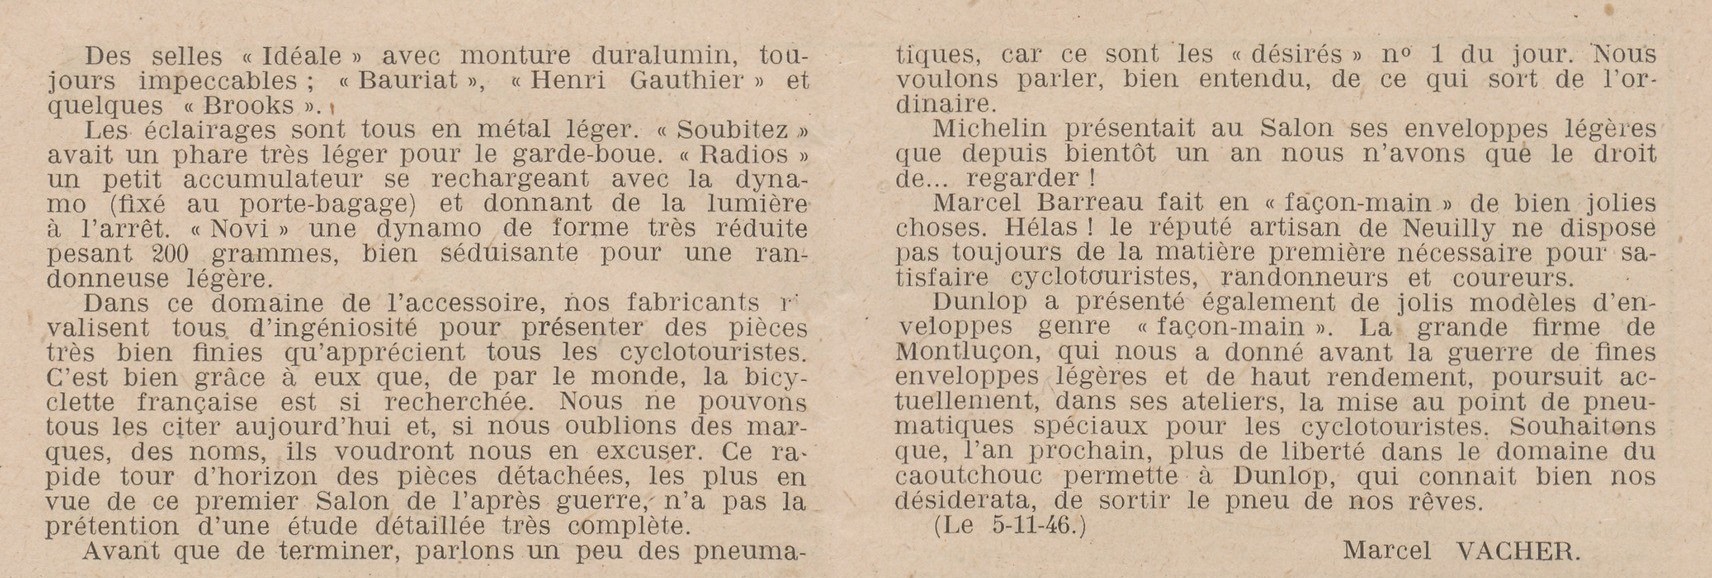 Salon du Cycle octobre 1946, Paris, le Grand Palais - L'Equipe - Cyclo Magazine 230210031409721918108775